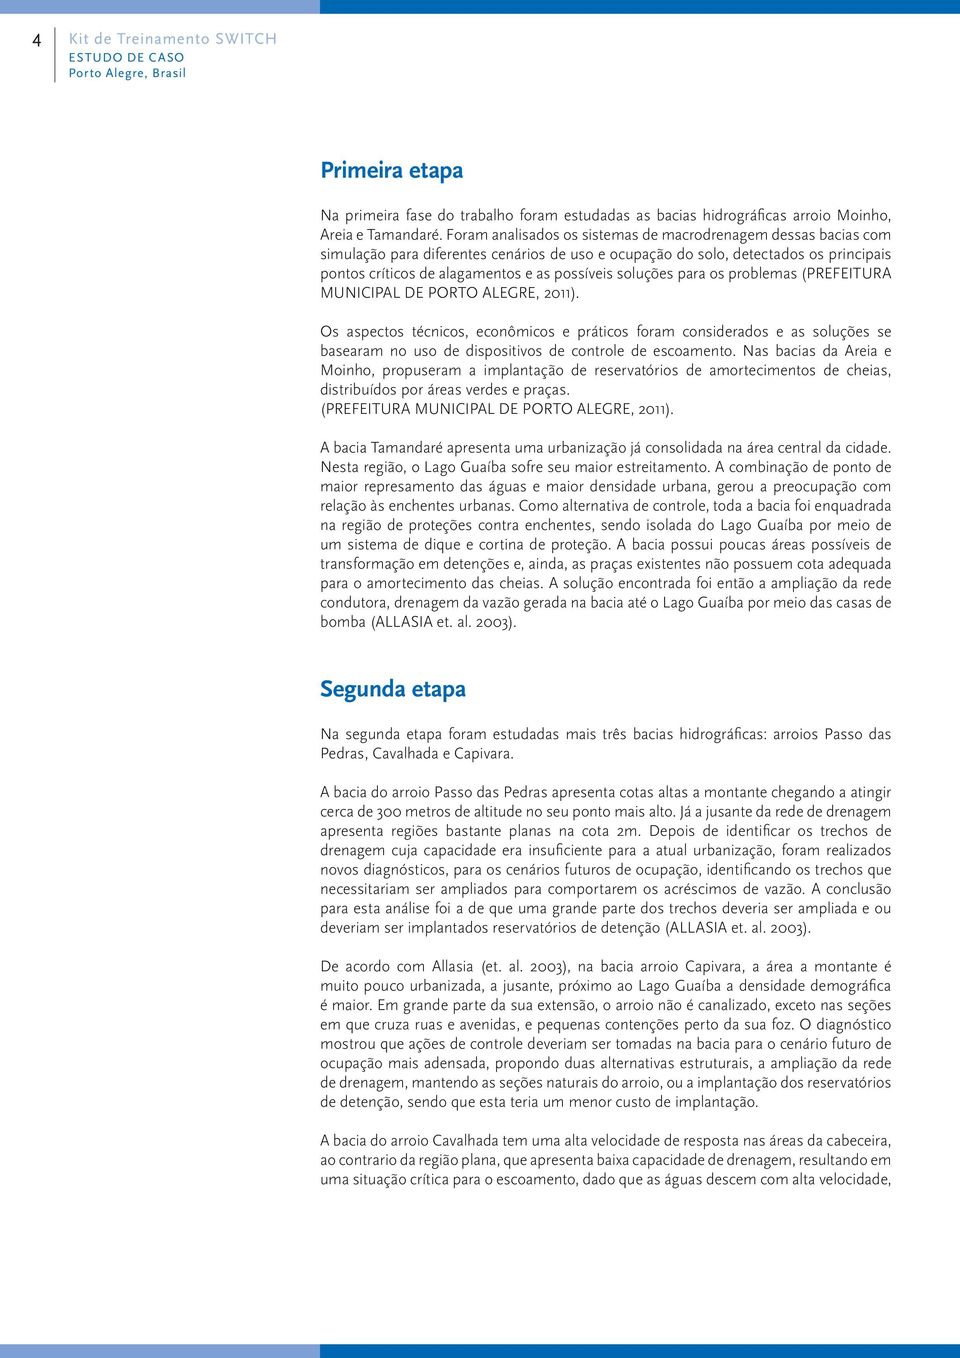 soluções para os problemas (PREFEITURA MUNICIPAL DE PORTO ALEGRE, 2011).